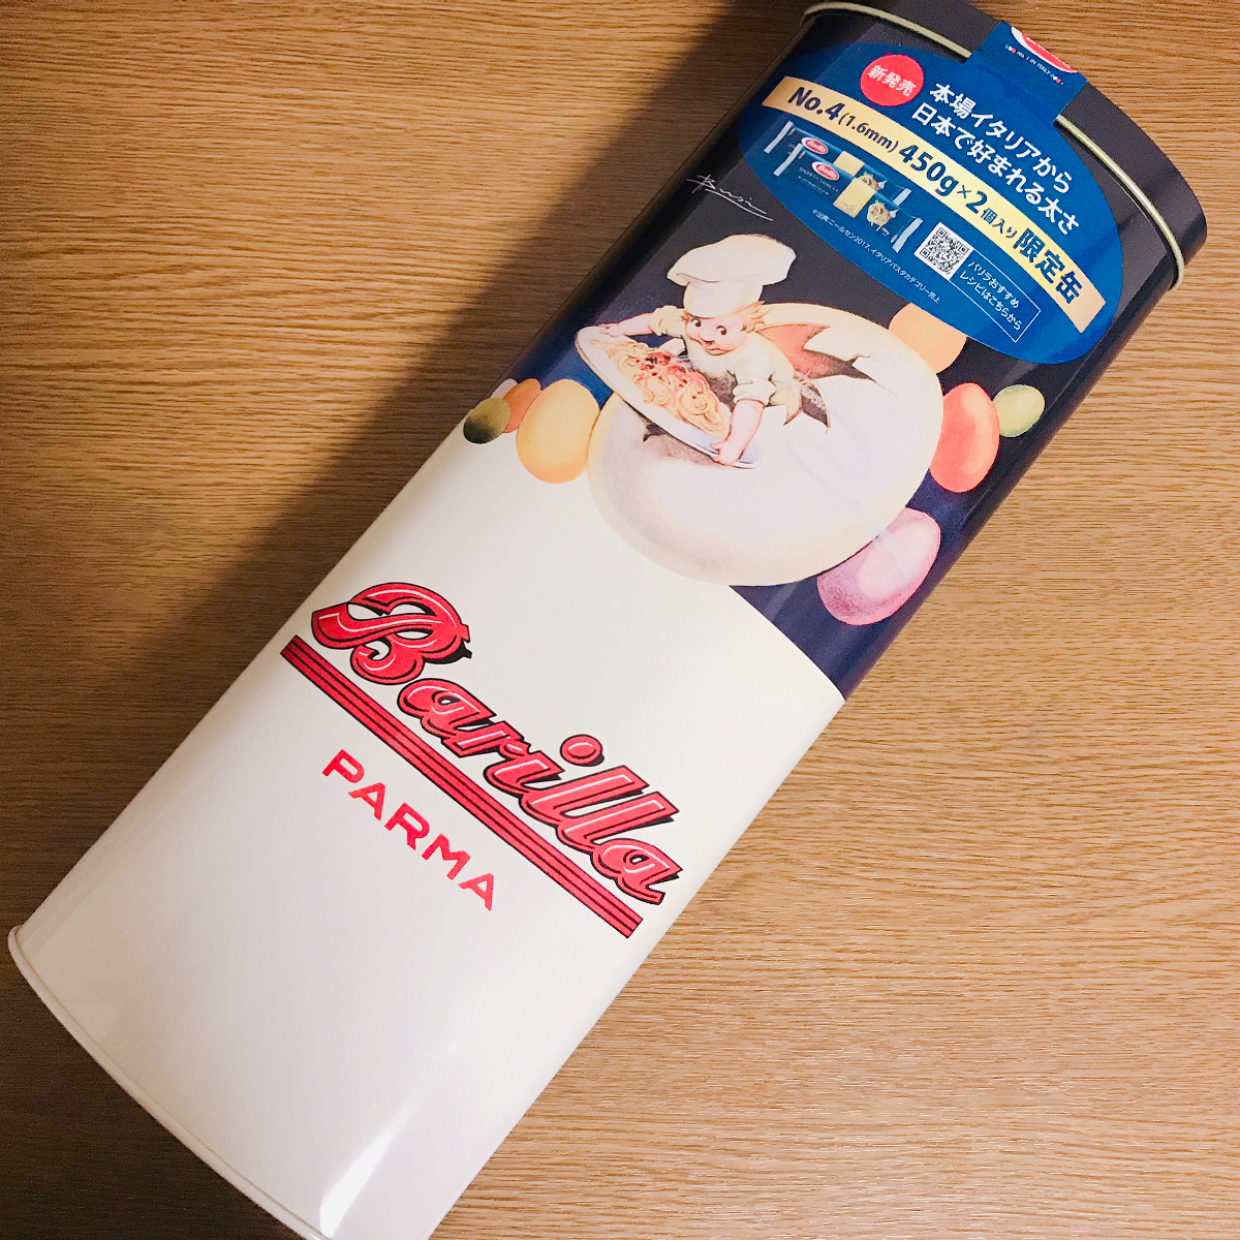  【カルディ】で見つけたパスタブランド・バリラの限定缶が即買いレベルのかわいさだった♡ 